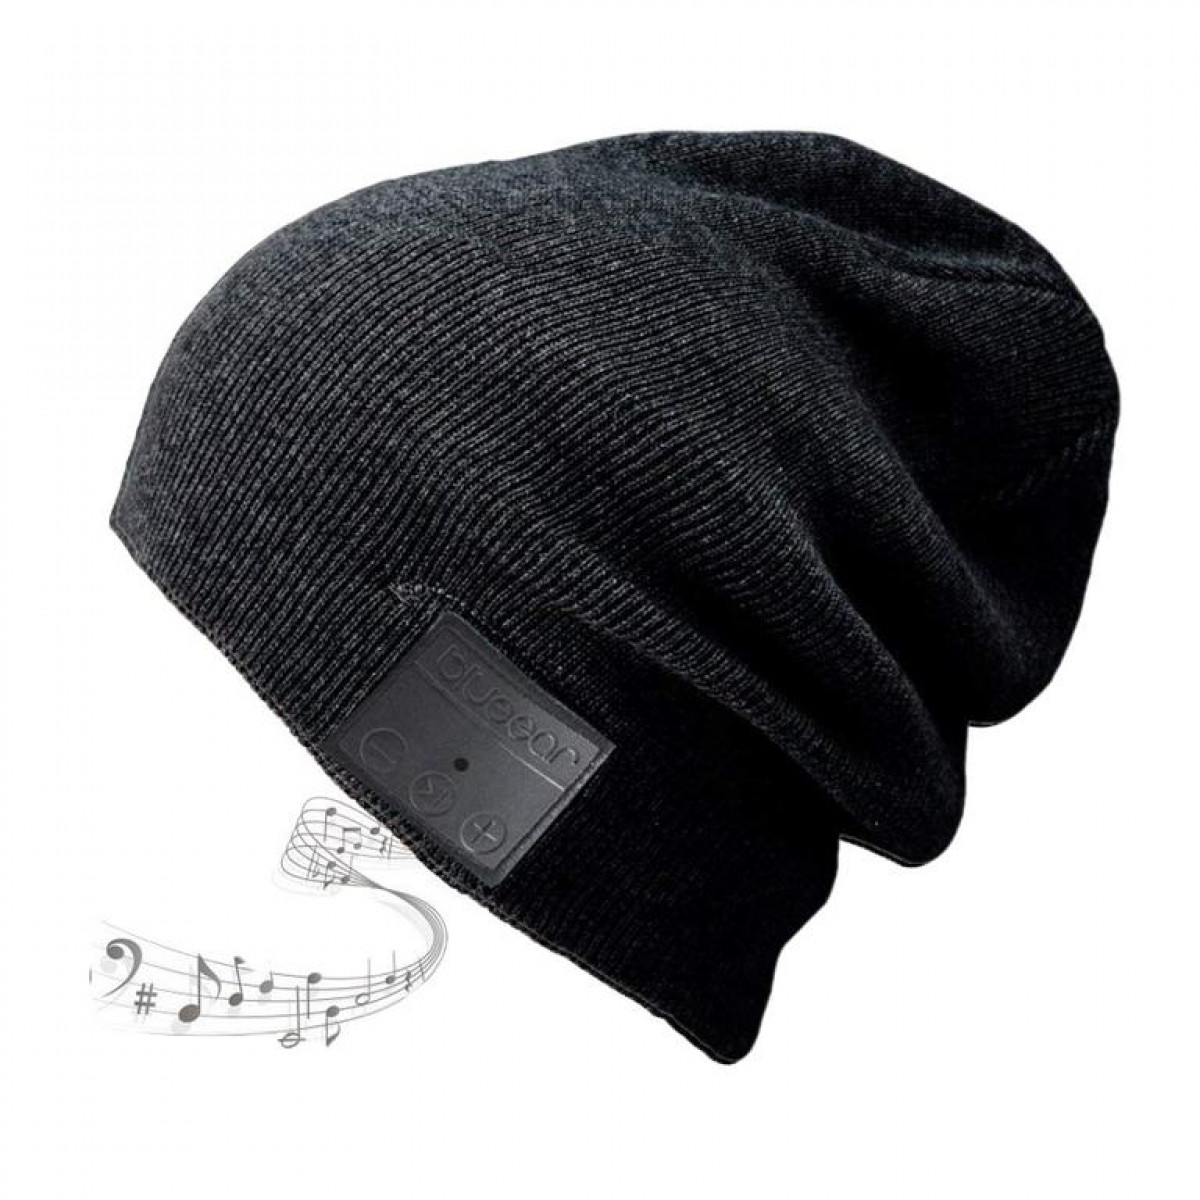 INF Kopfhörermütze - Mütze mit Kopfhörern Mikrofon und Kopfhörer schwarz, Bluetooth - schwarz Over-ear